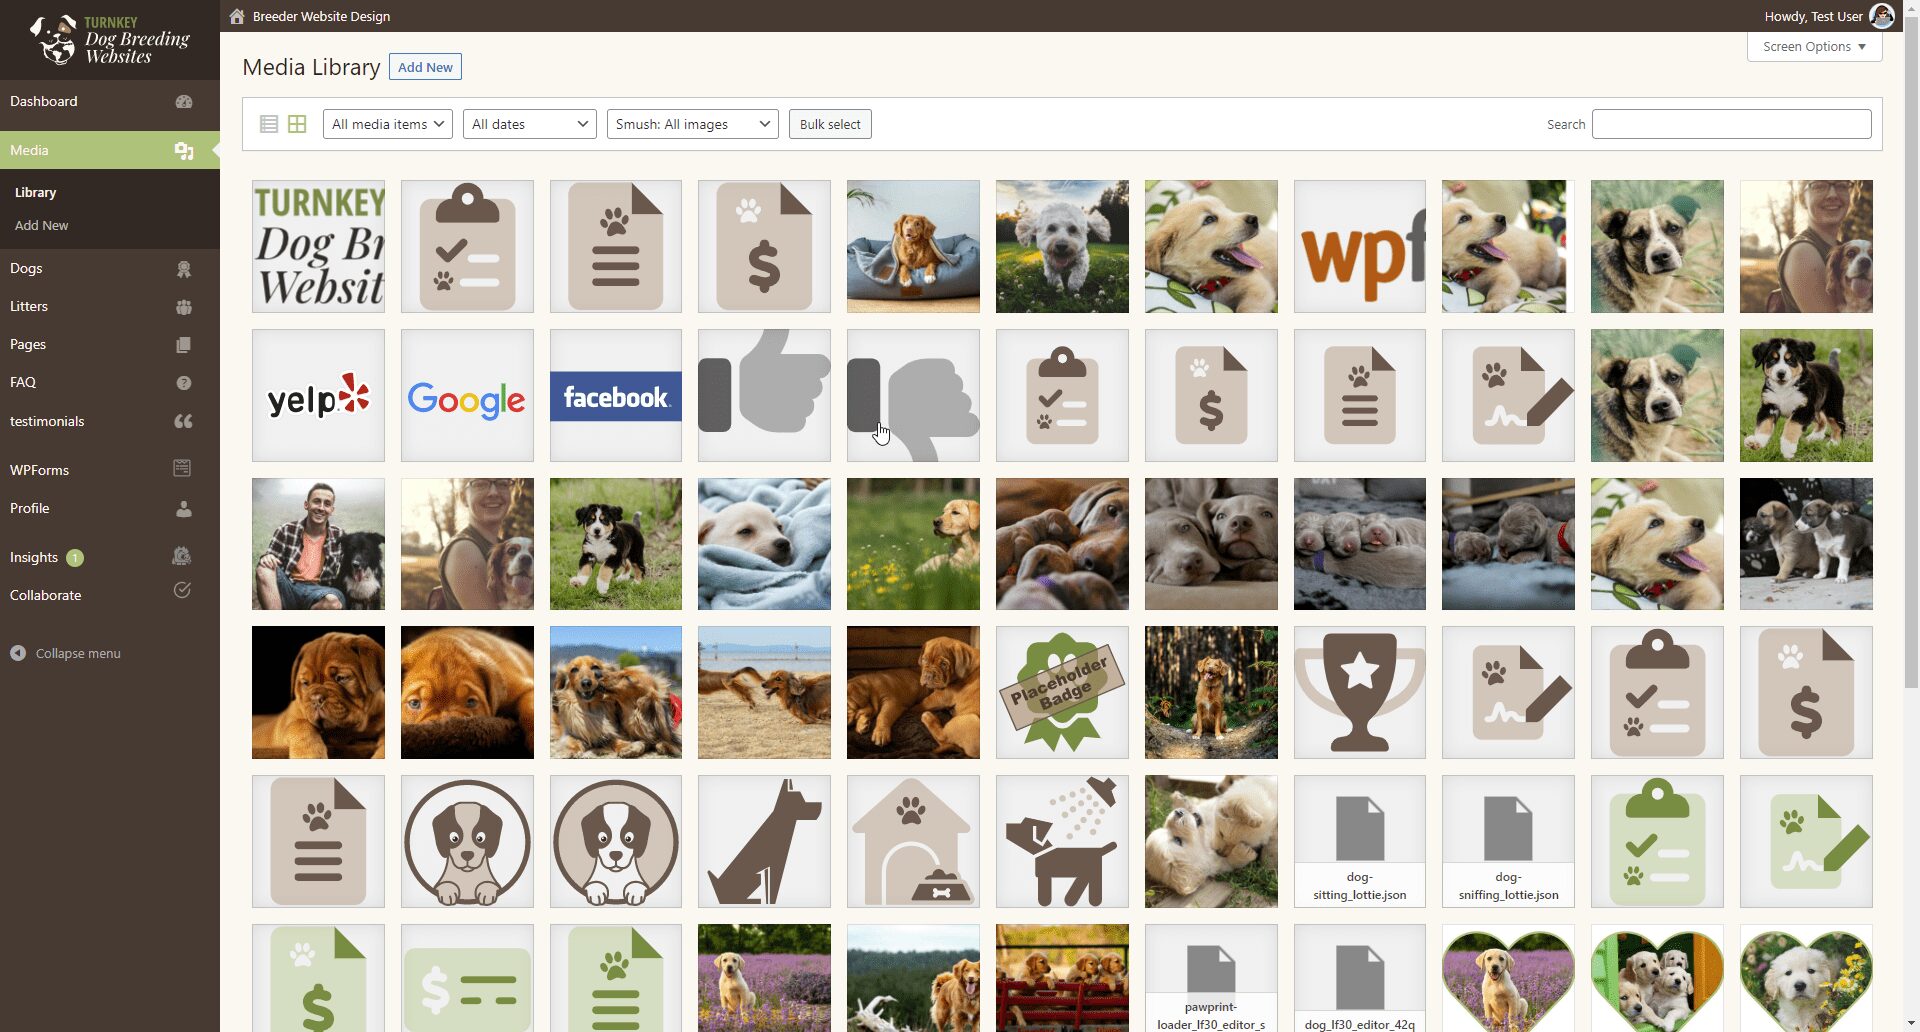 Turnkey Dog Breeding Websites - Media Library - Screenshot